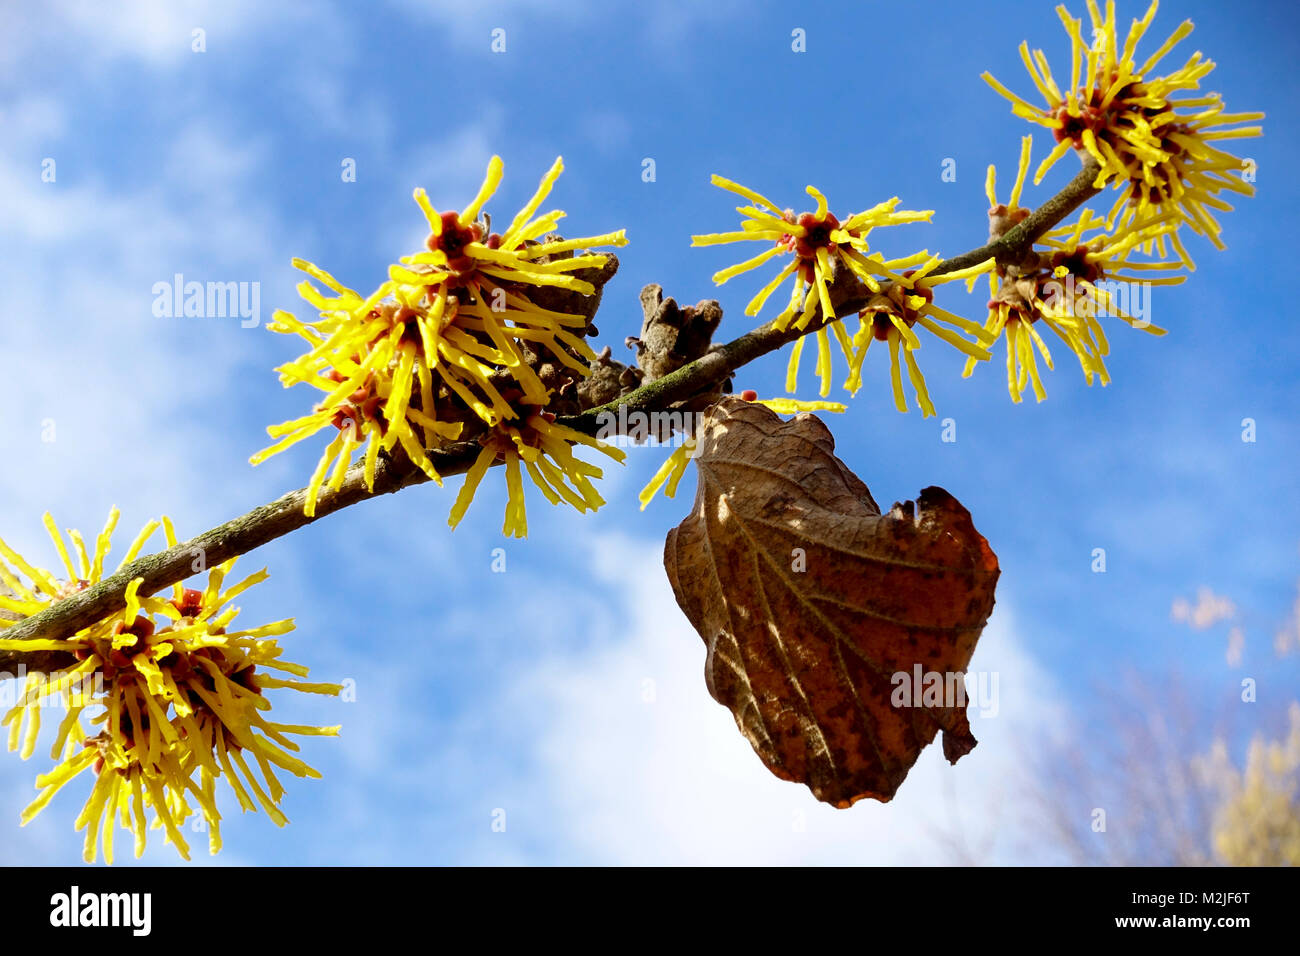 Hexenhasel, Hamamelis mollis' Brevipetala' Winterblumen auf Ast, Himmelshintergrund Stockfoto